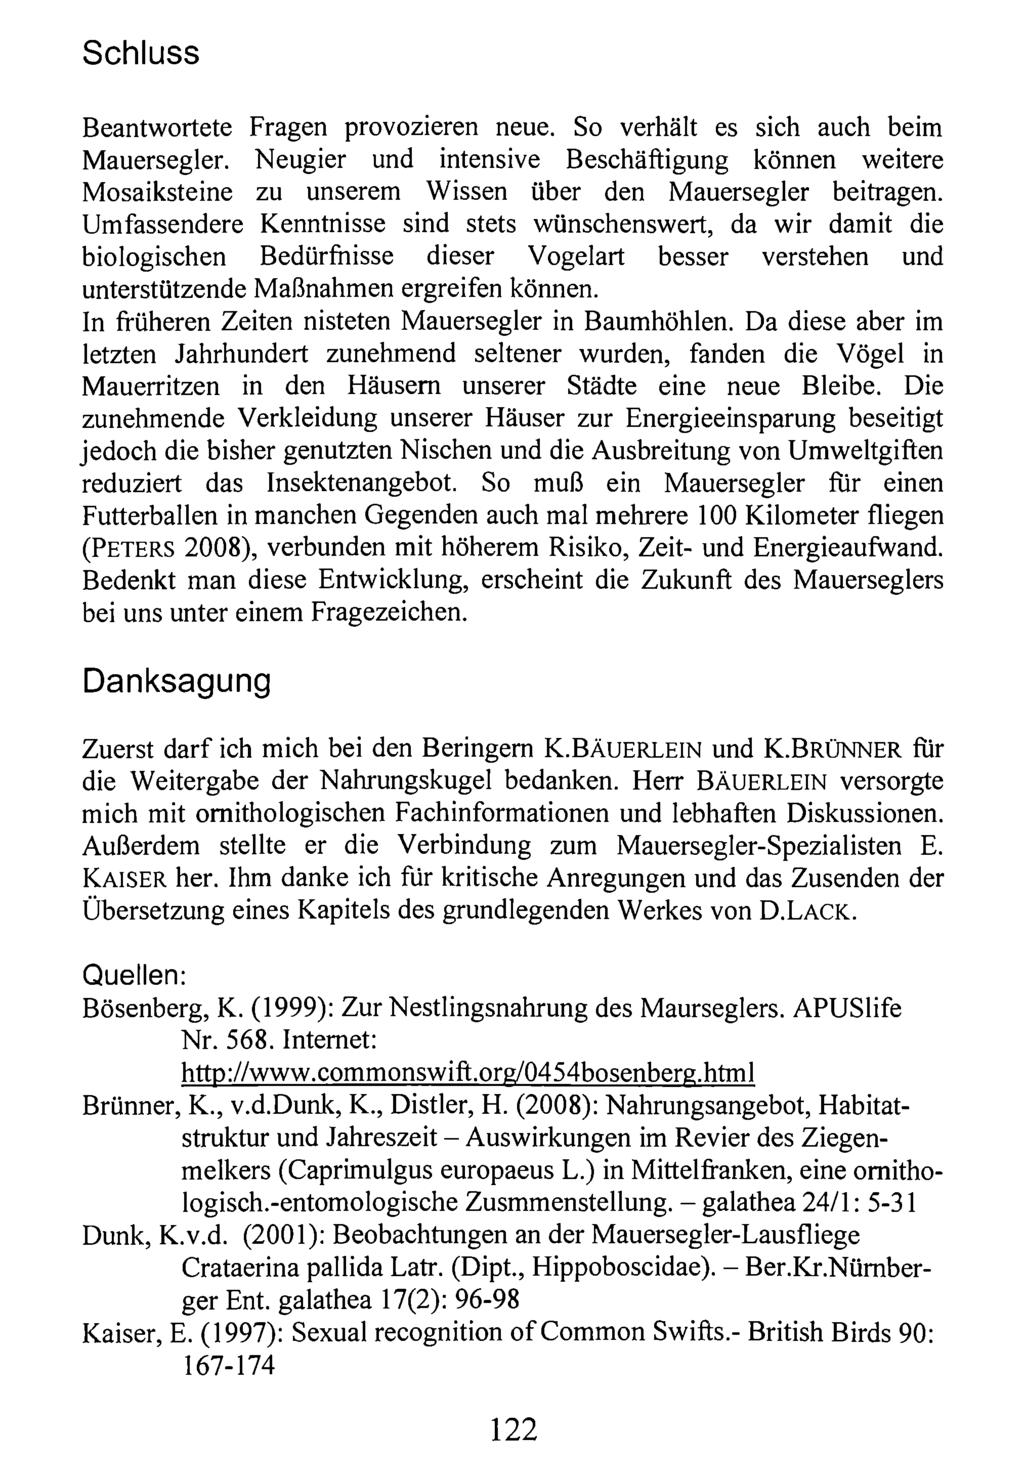 Schluss Kreis Nürnberger Entomologen; download unter www.biologiezentrum.at Beantwortete Fragen provozieren neue. So verhält es sich auch beim Mauersegler.